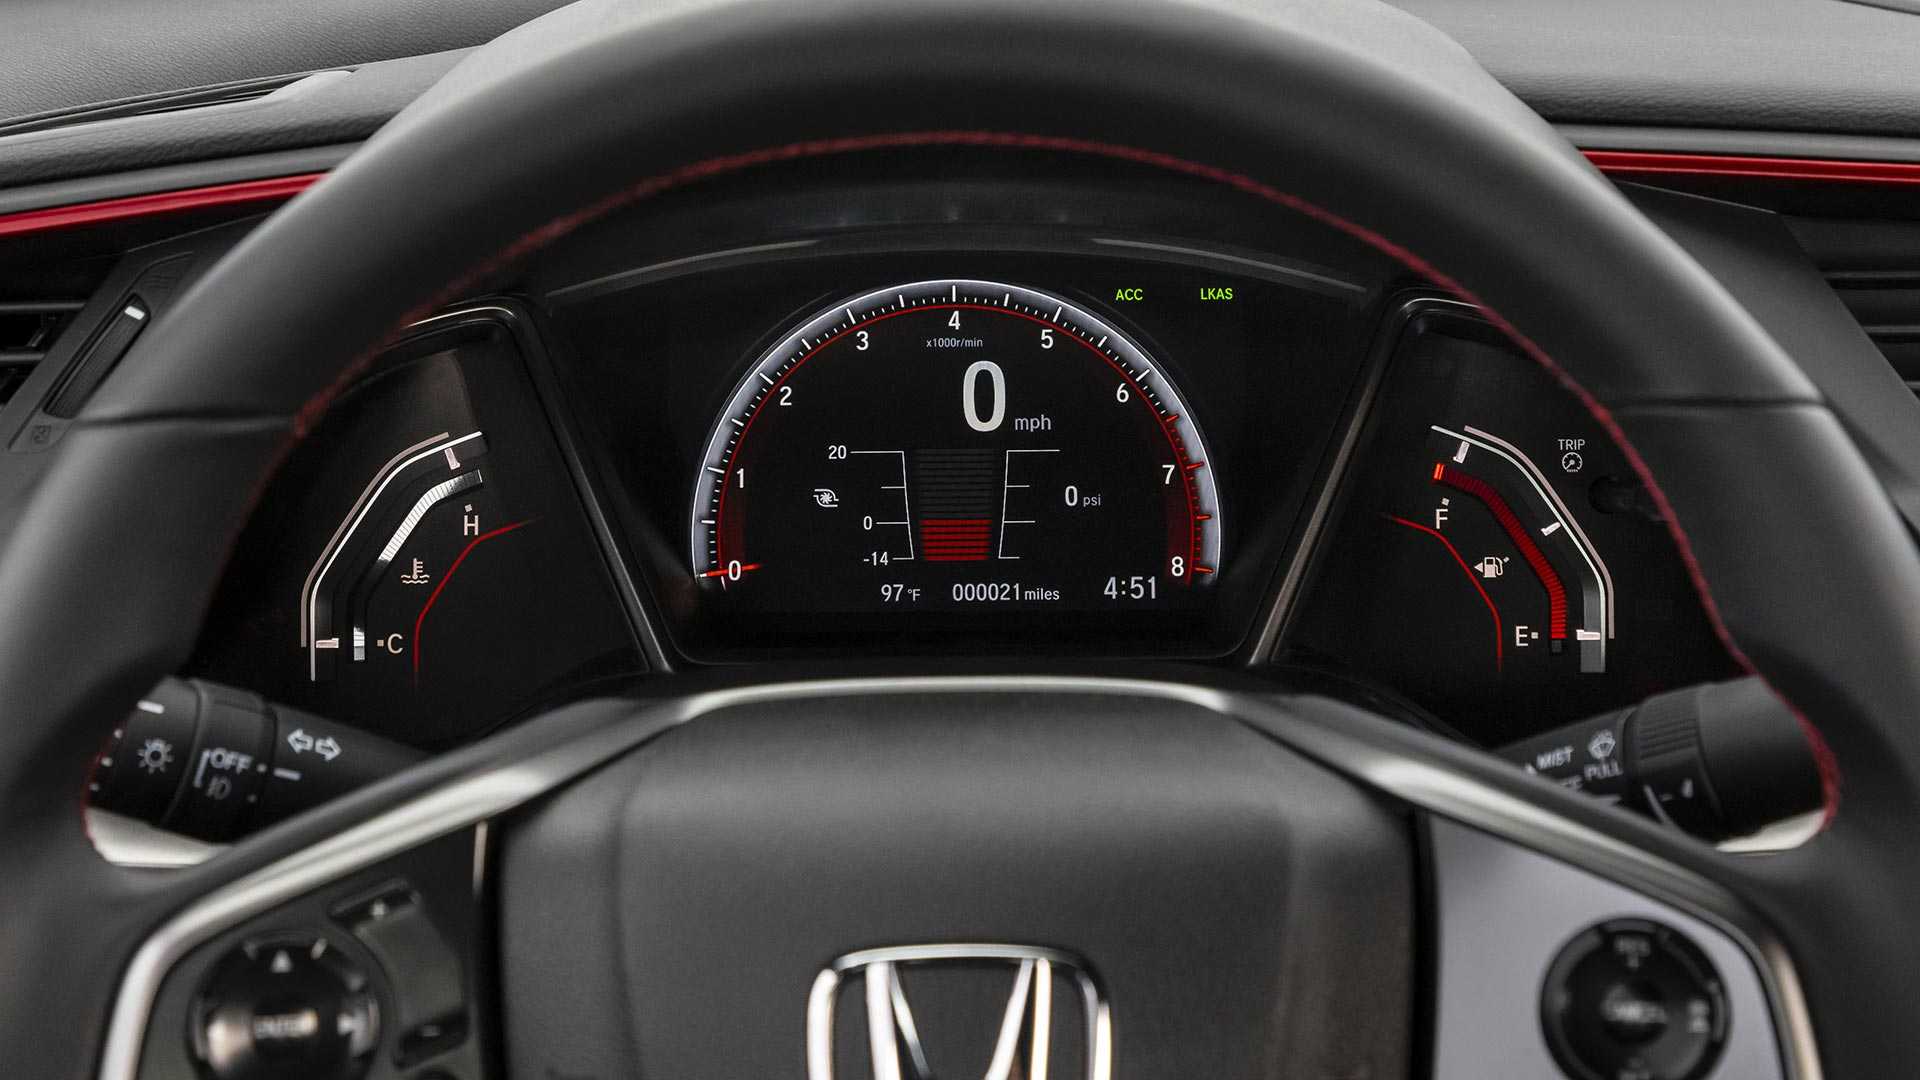 Khám phá Honda Civic Si 2020 phiên bản thể thao - 15